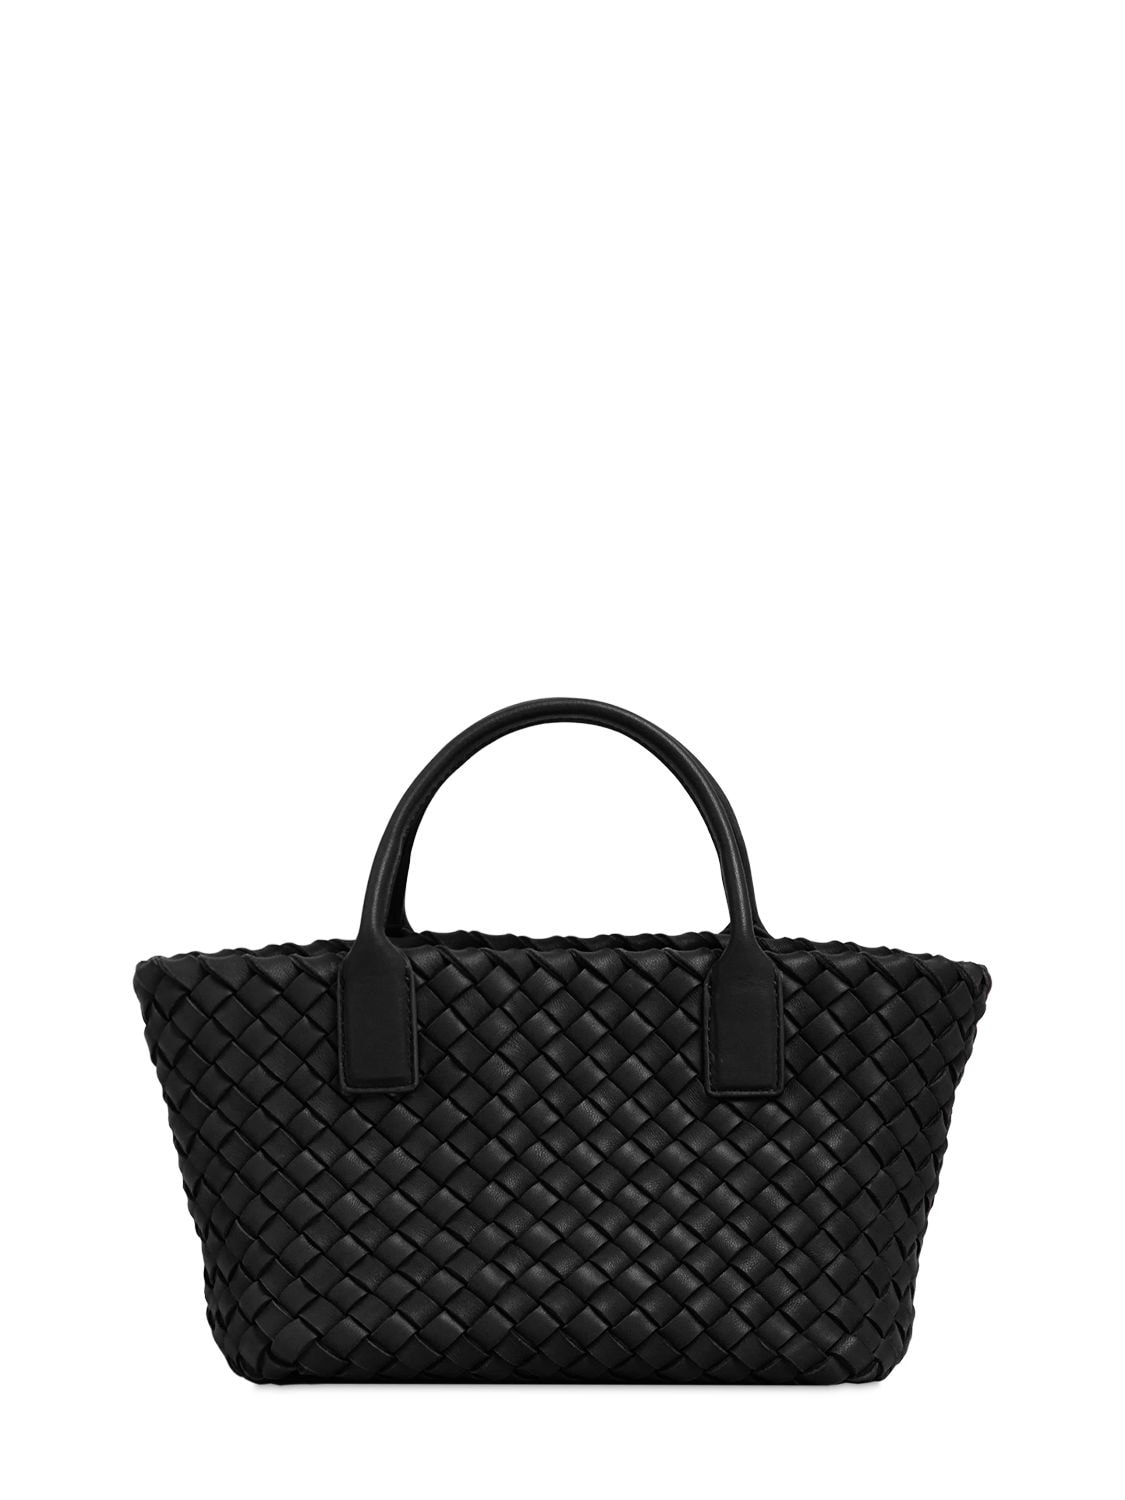 Bottega Veneta Cabat Leather Shoulder Bag In Black